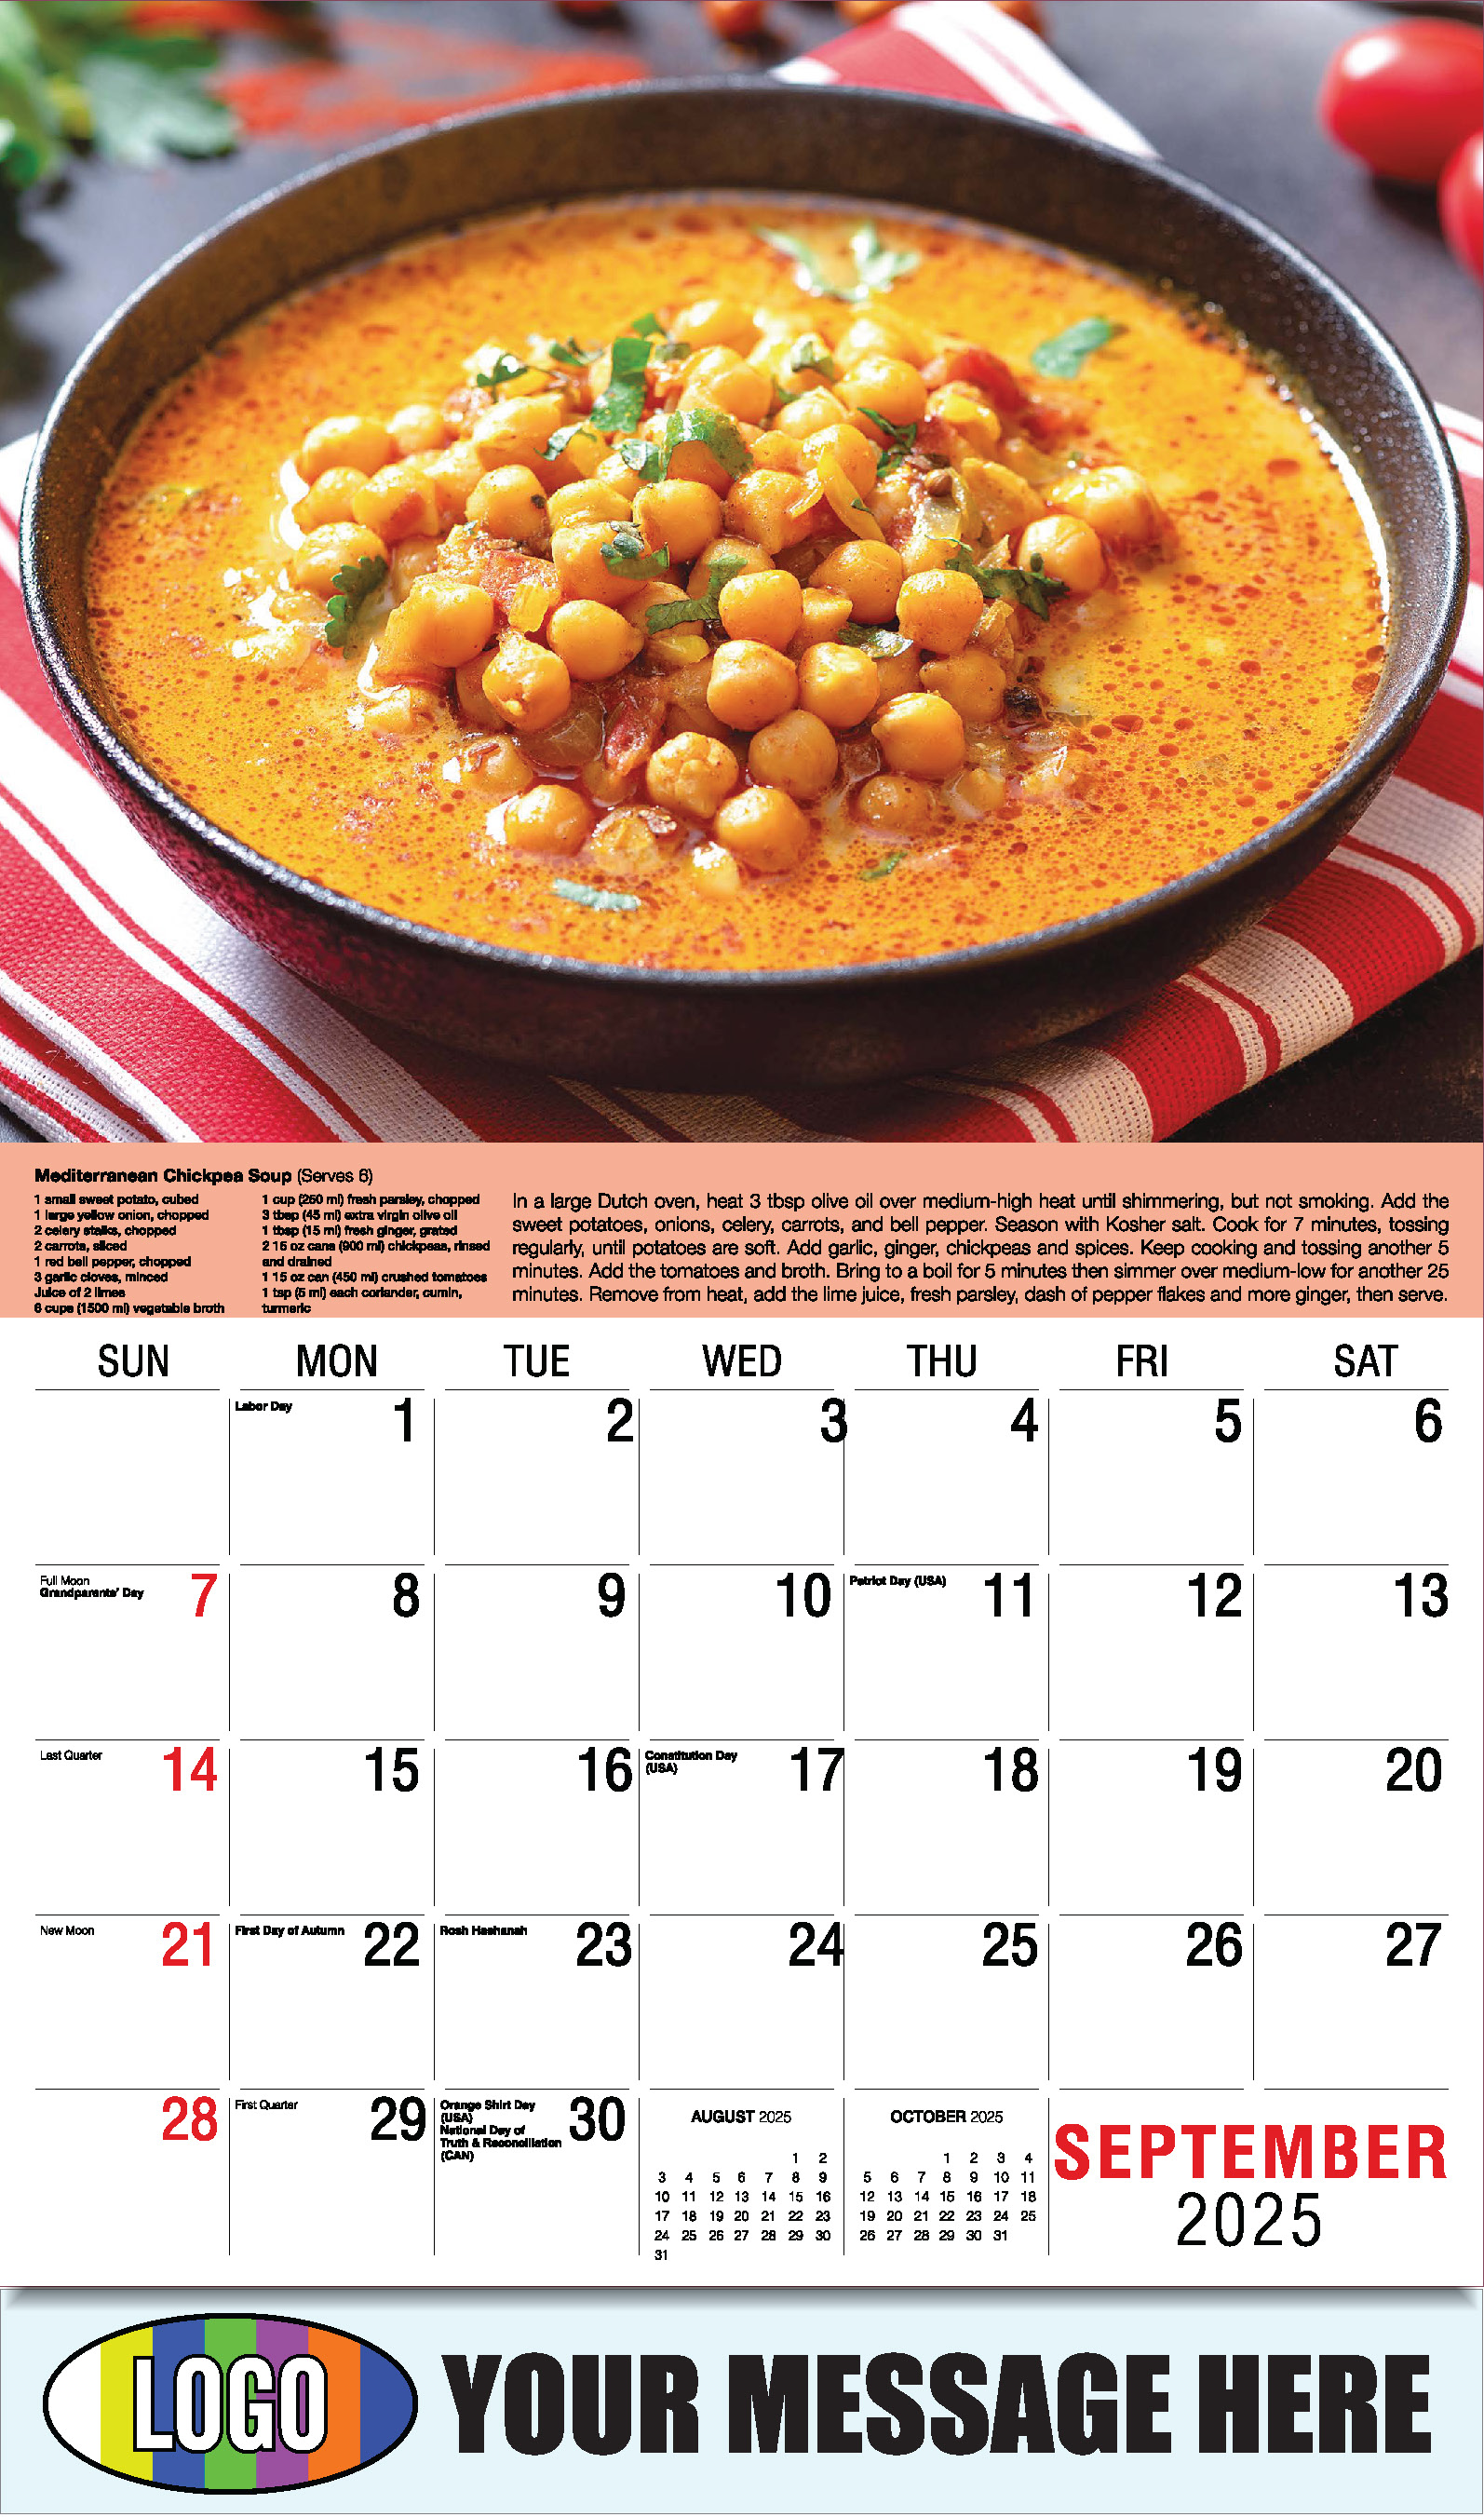 Recipes 2025 Business Promotional Calendar - September